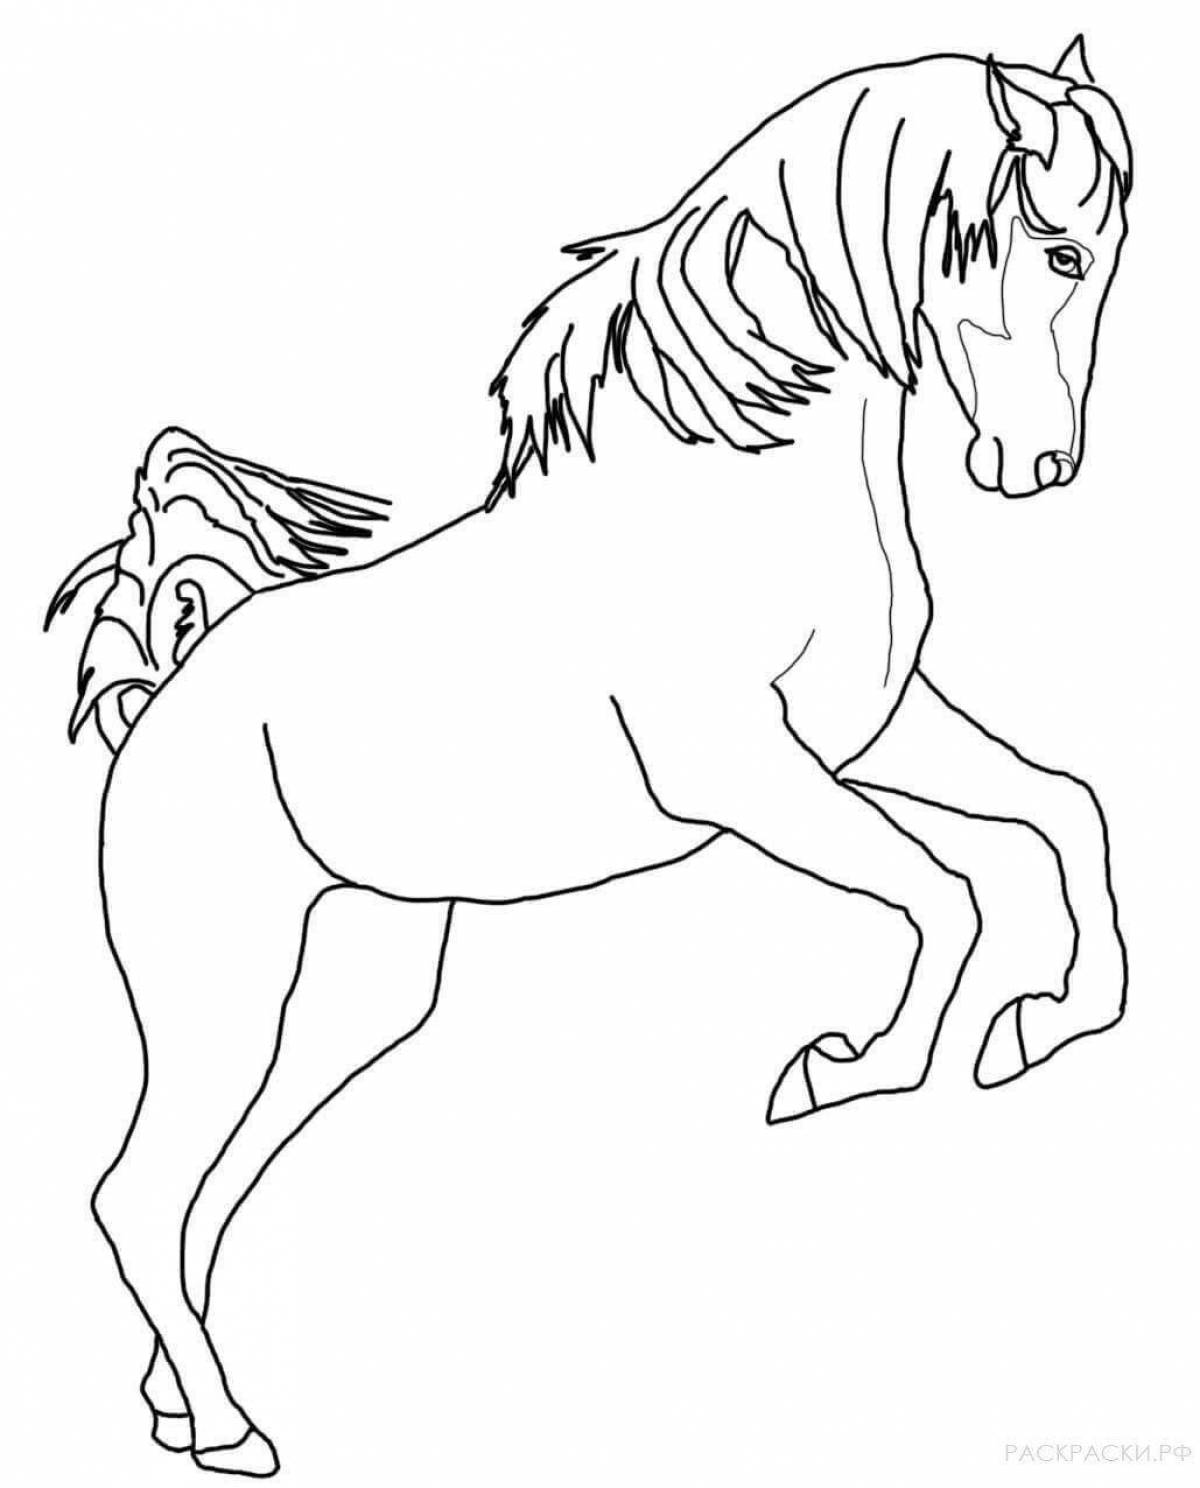 Величественная раскраска лошадь для детей 6-7 лет